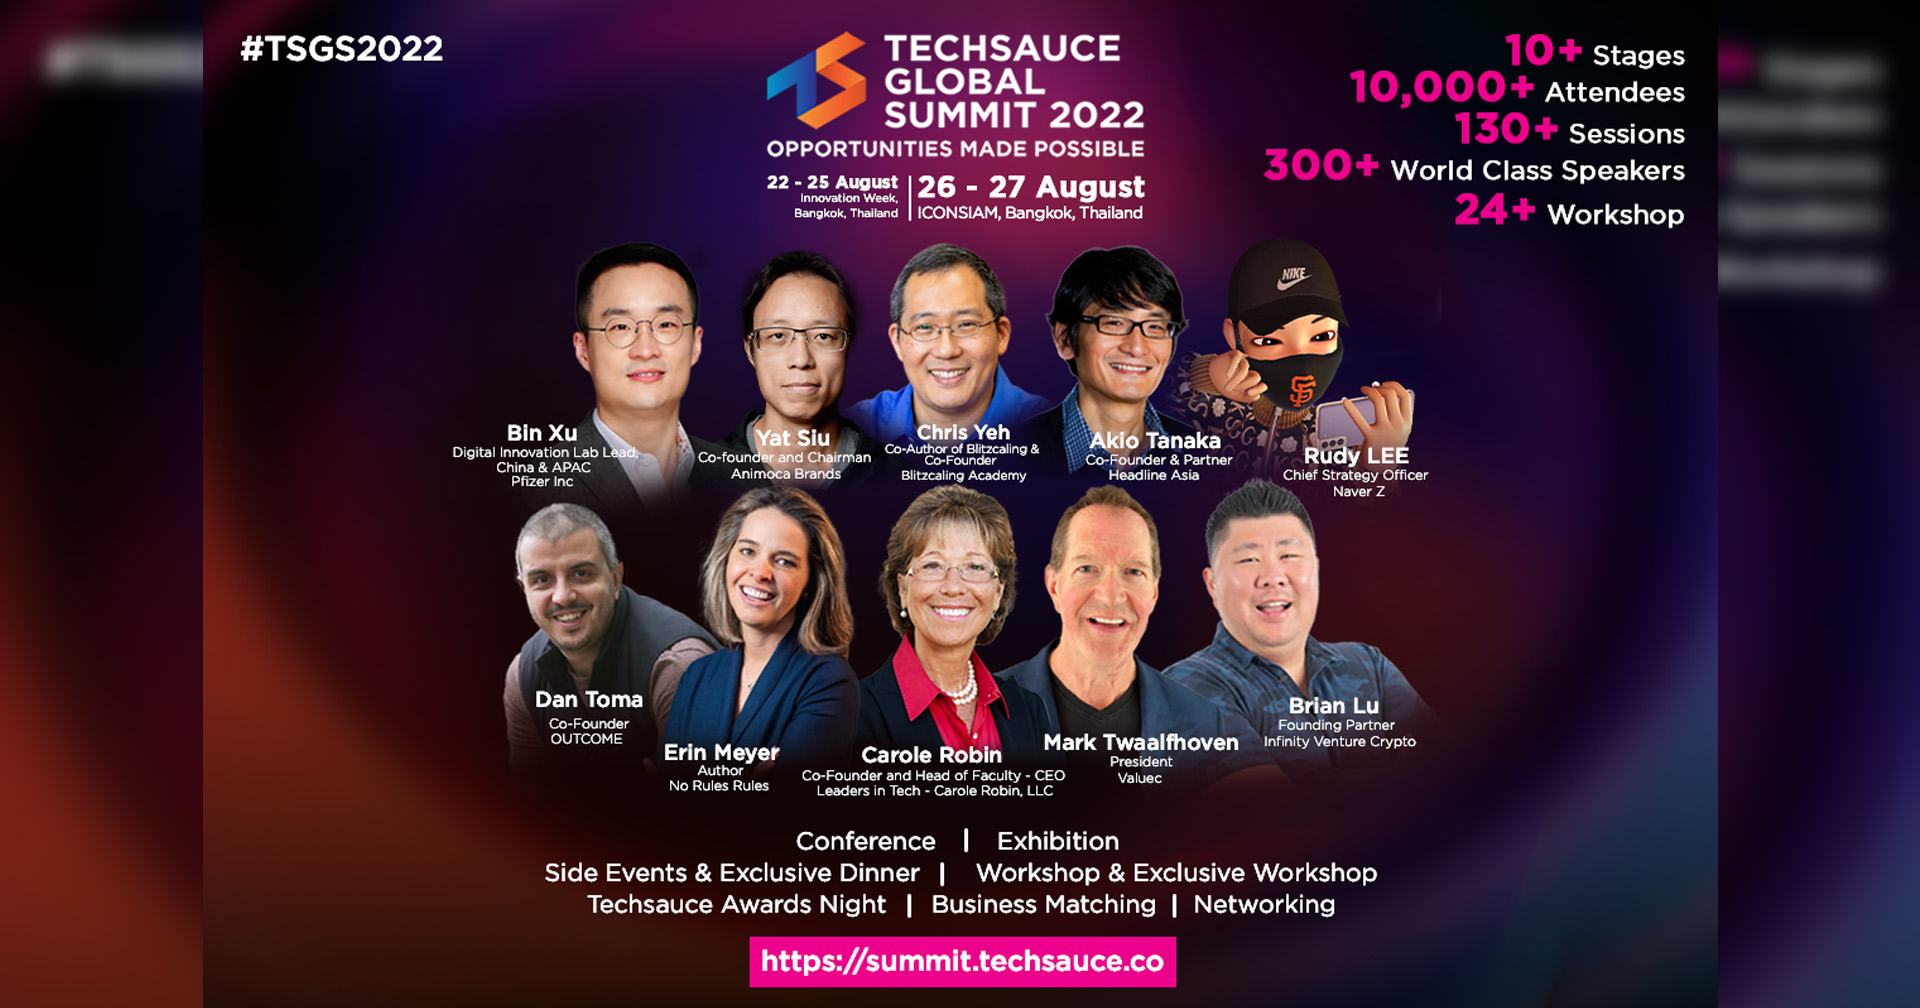 เตรียมพบ Techsauce Global Summit 2022 งานประชุมเทคโนโลยีที่ใหญ่ที่สุดใน SEA 26-27 สิงหาคมนี้ ณ ICONSIAM